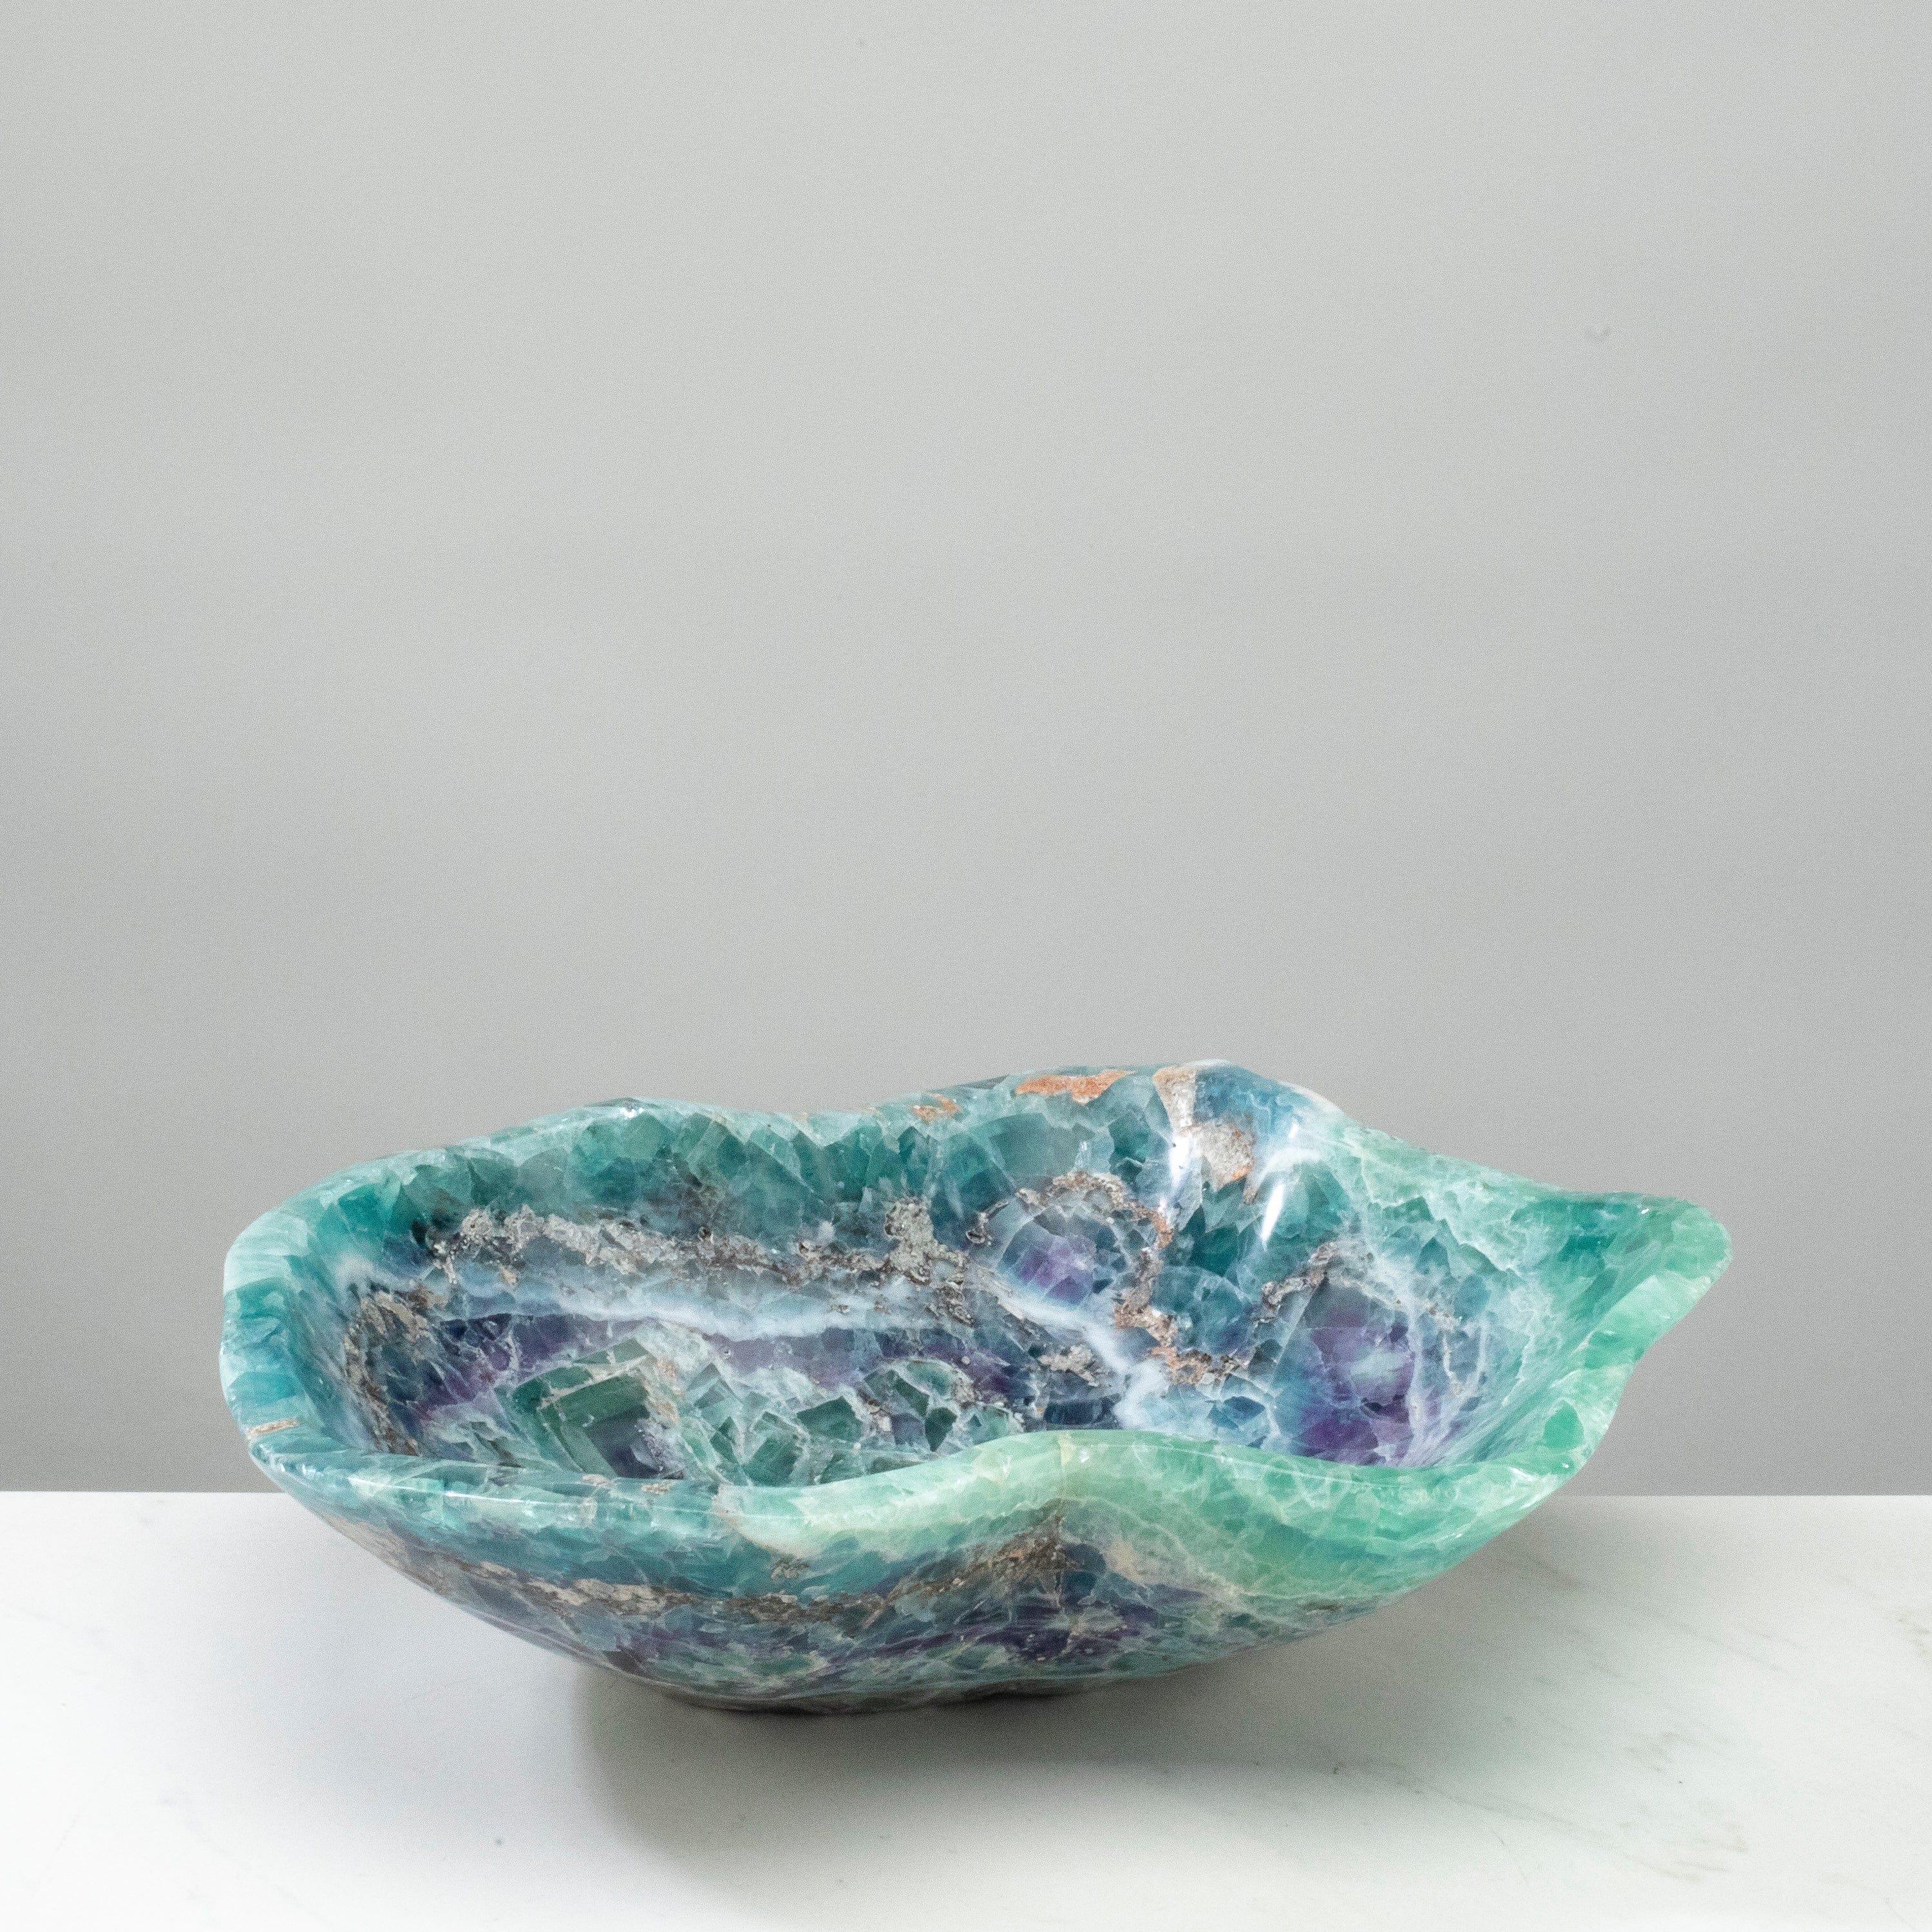 KALIFANO Gemstone Bowls Natural Blue / Green Fluorite Bowl 13" BFL7600.001